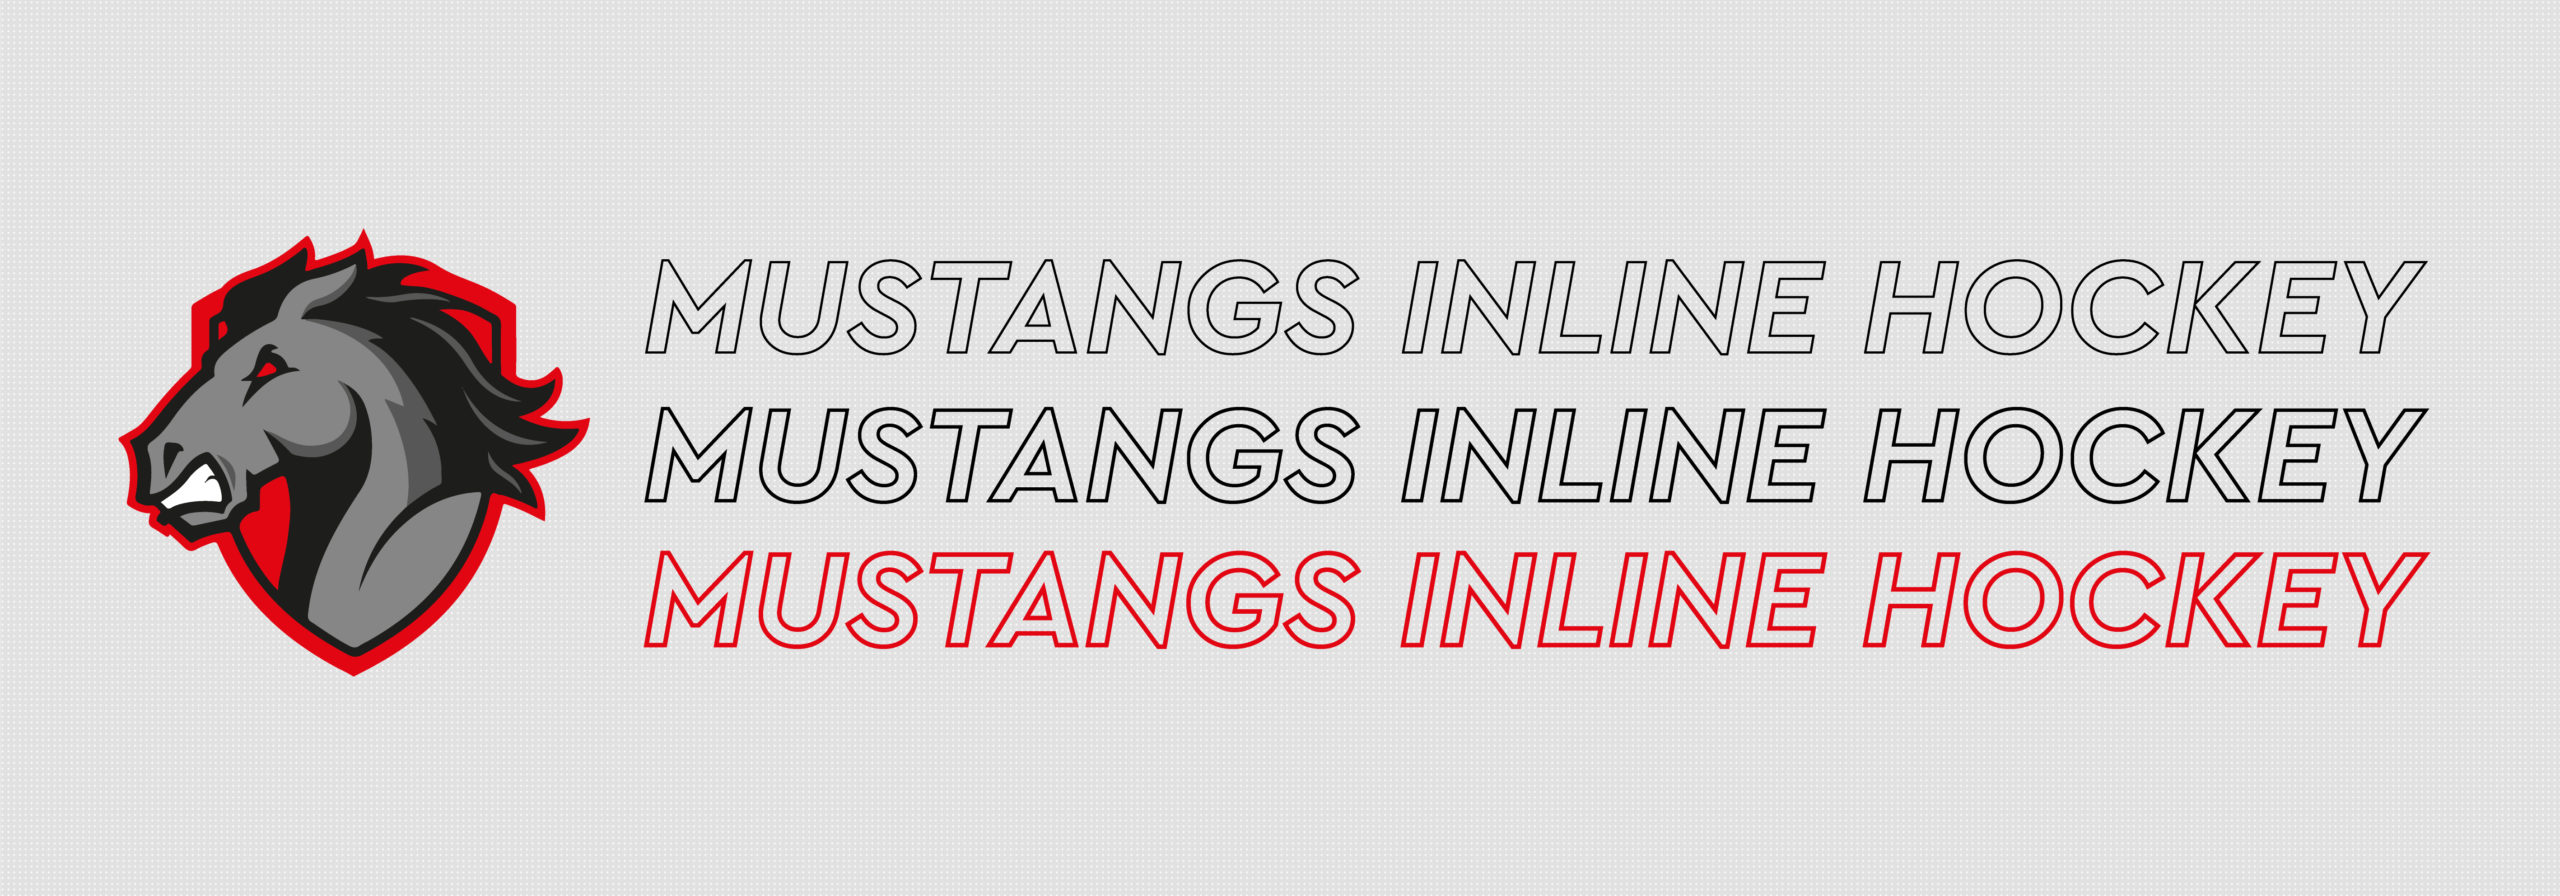 Mustangs Inline Hockey Jersey